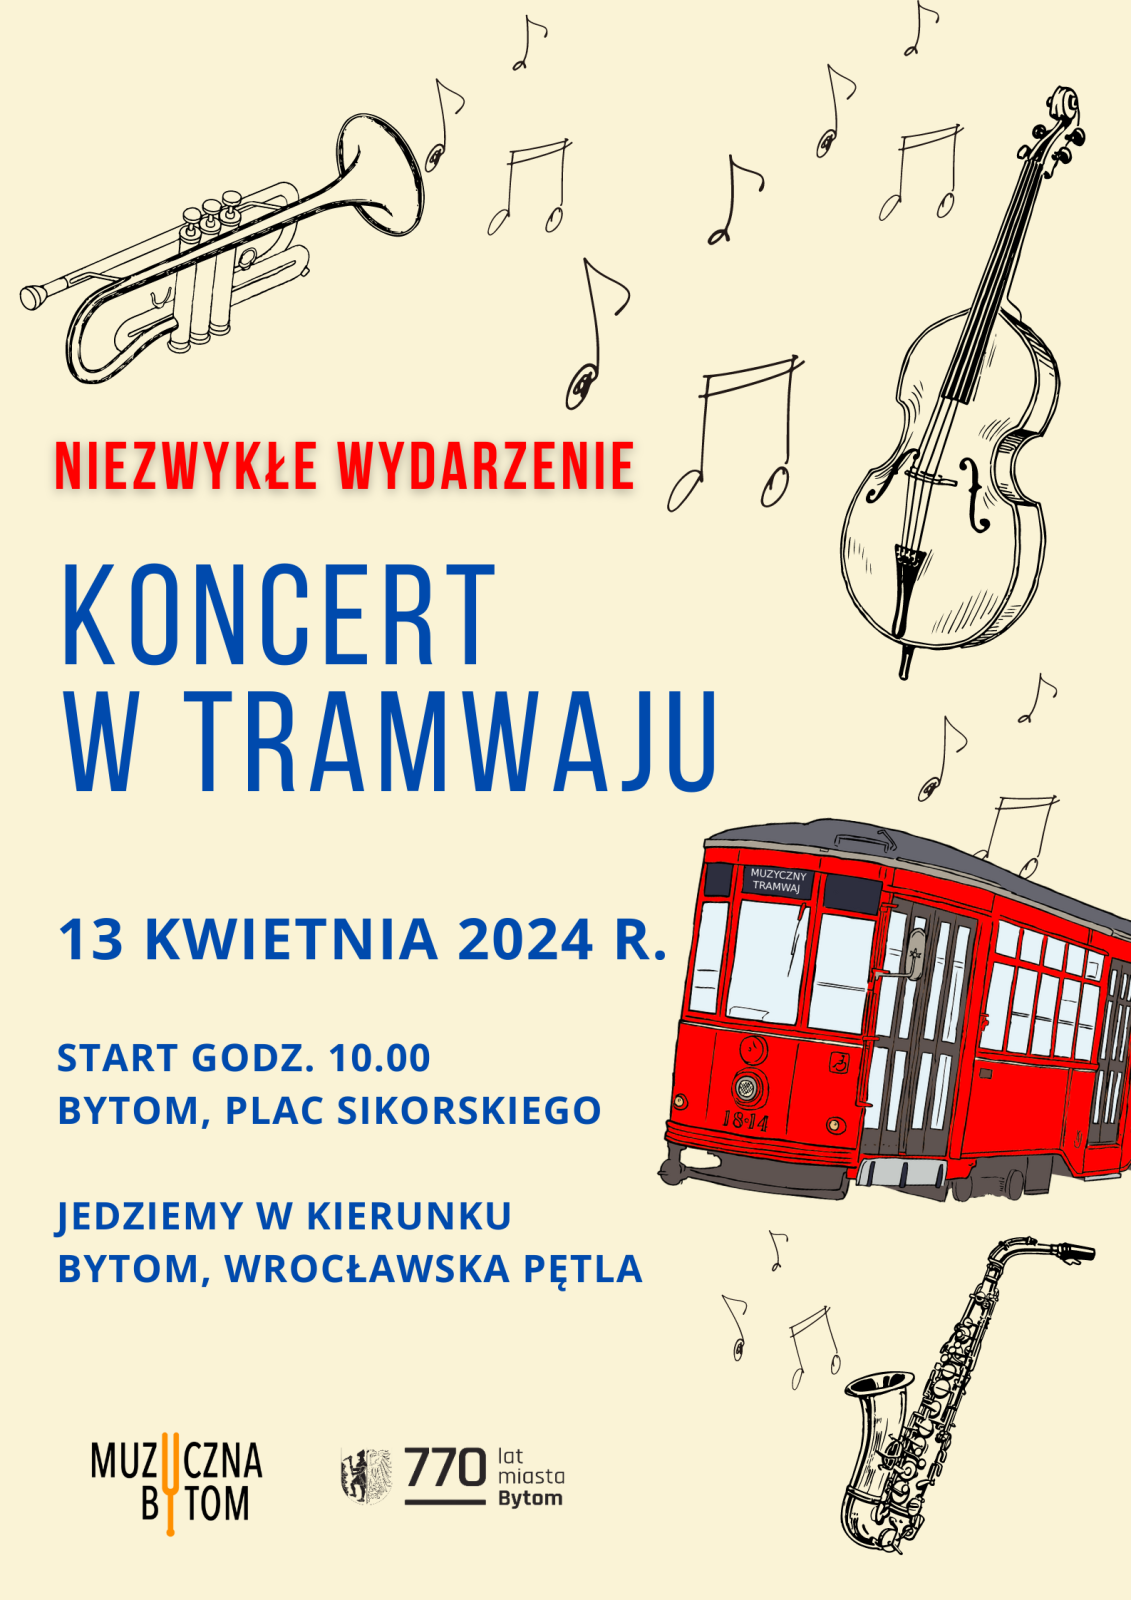 Plakat informujący o Muzycznym Tramwaju